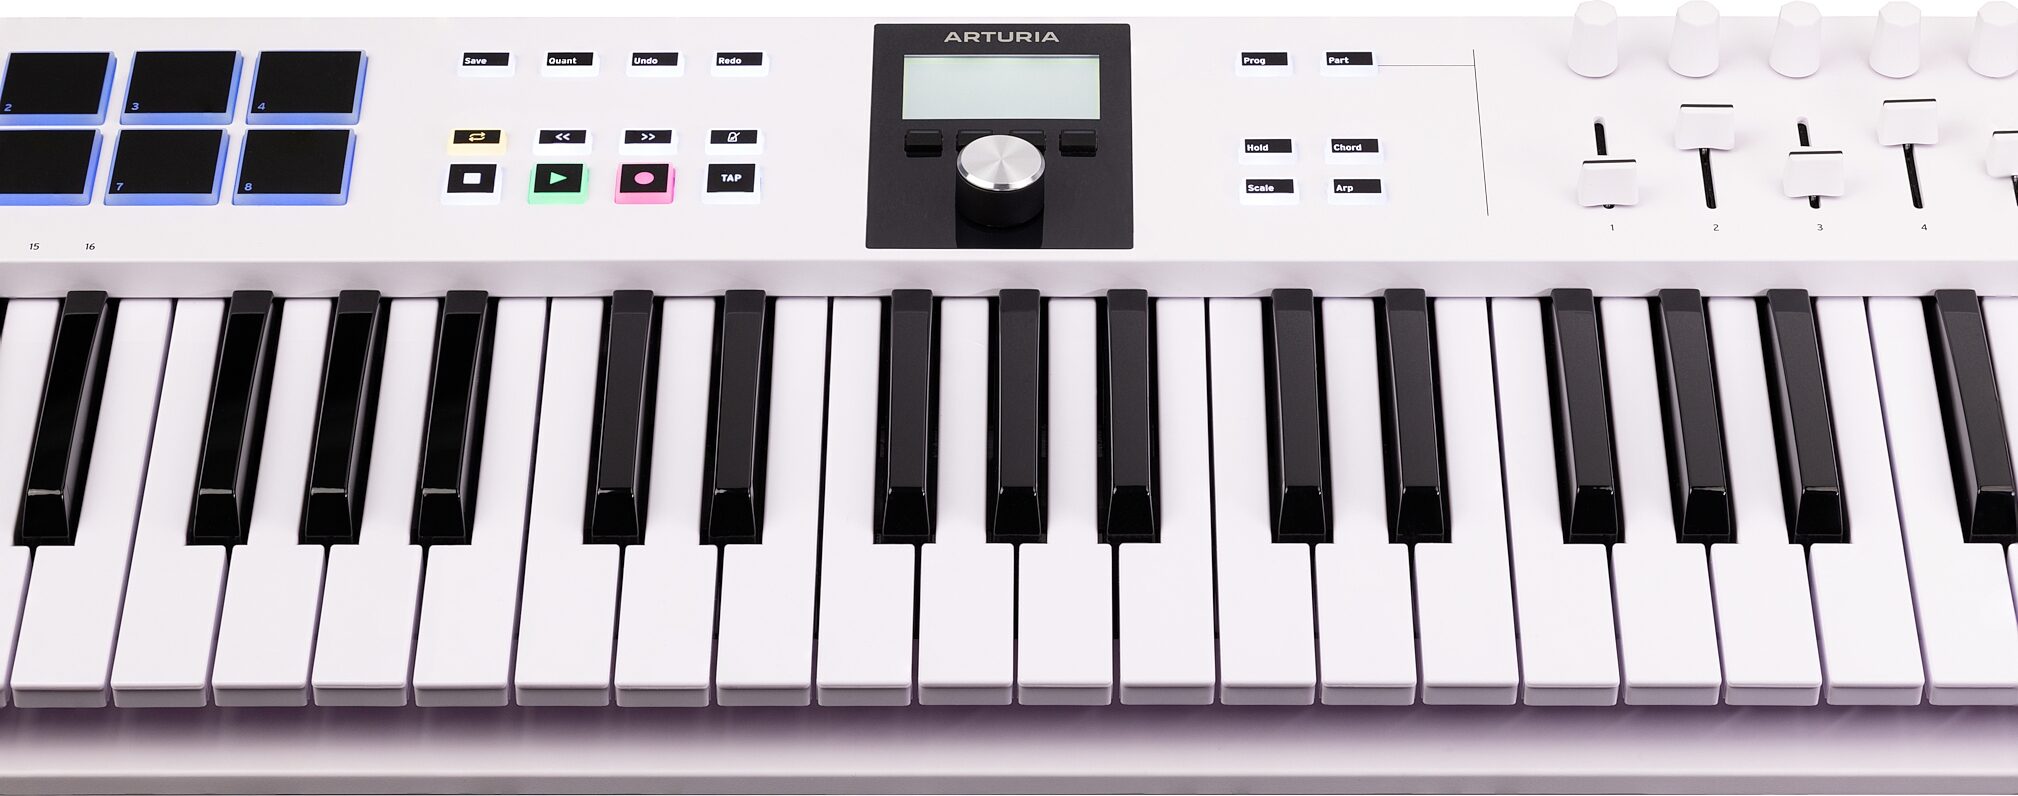 Arturia KeyLab Essential 49 MK3 MIDI Keyboard Controller, 49-Key